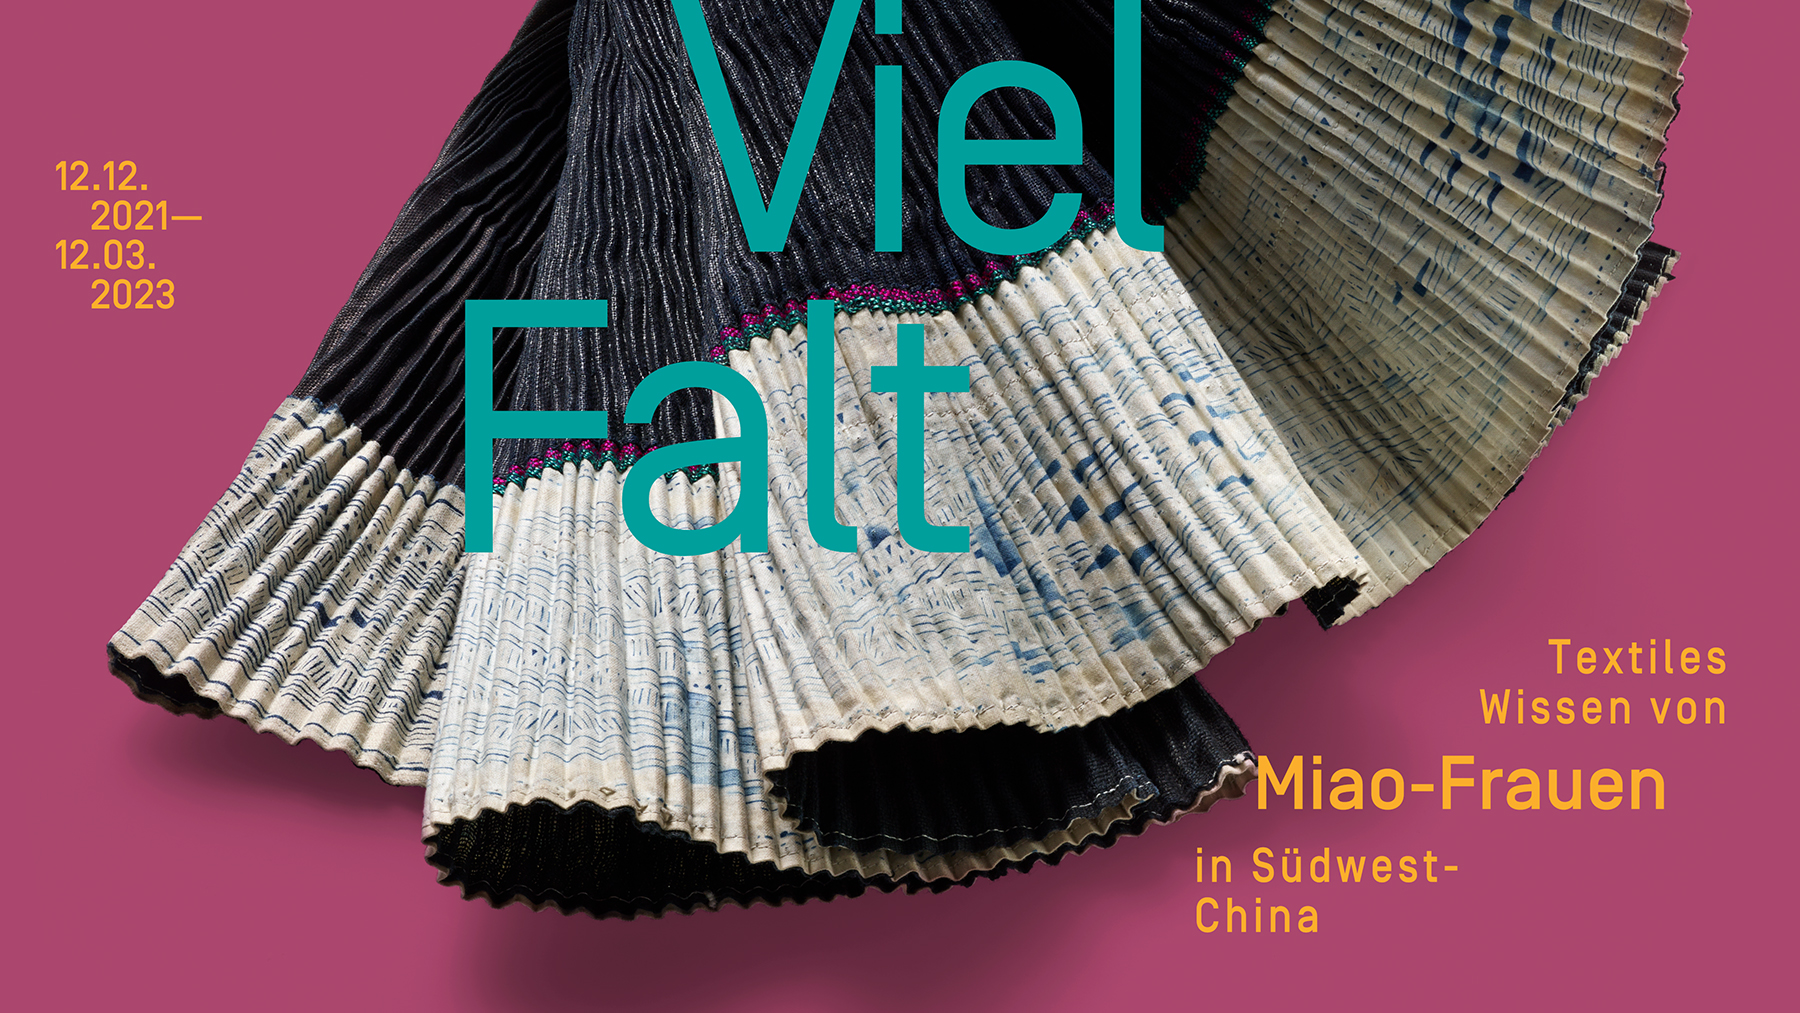 VielFalt – Textiles Wissen von Miao-Frauen in Südwest-China